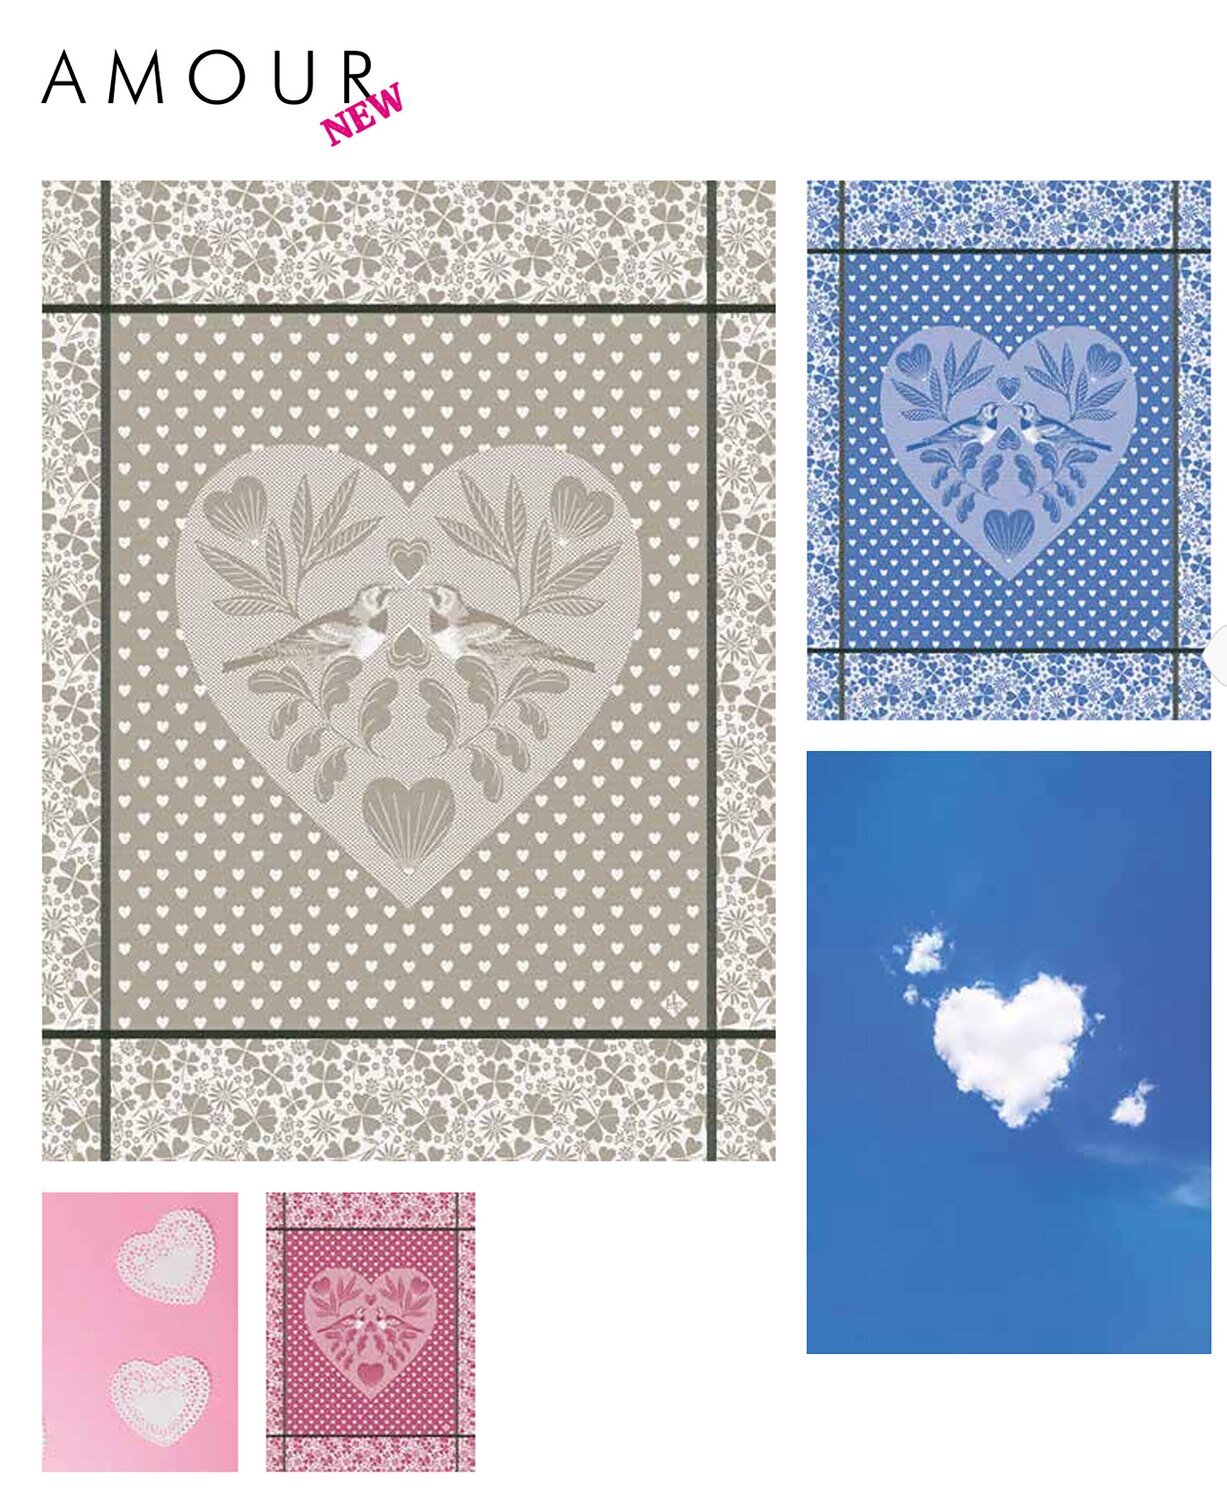 Le Jacquard Francais Amour Pink Tea Towel 24 x 31 Inch 27450 Set of 4